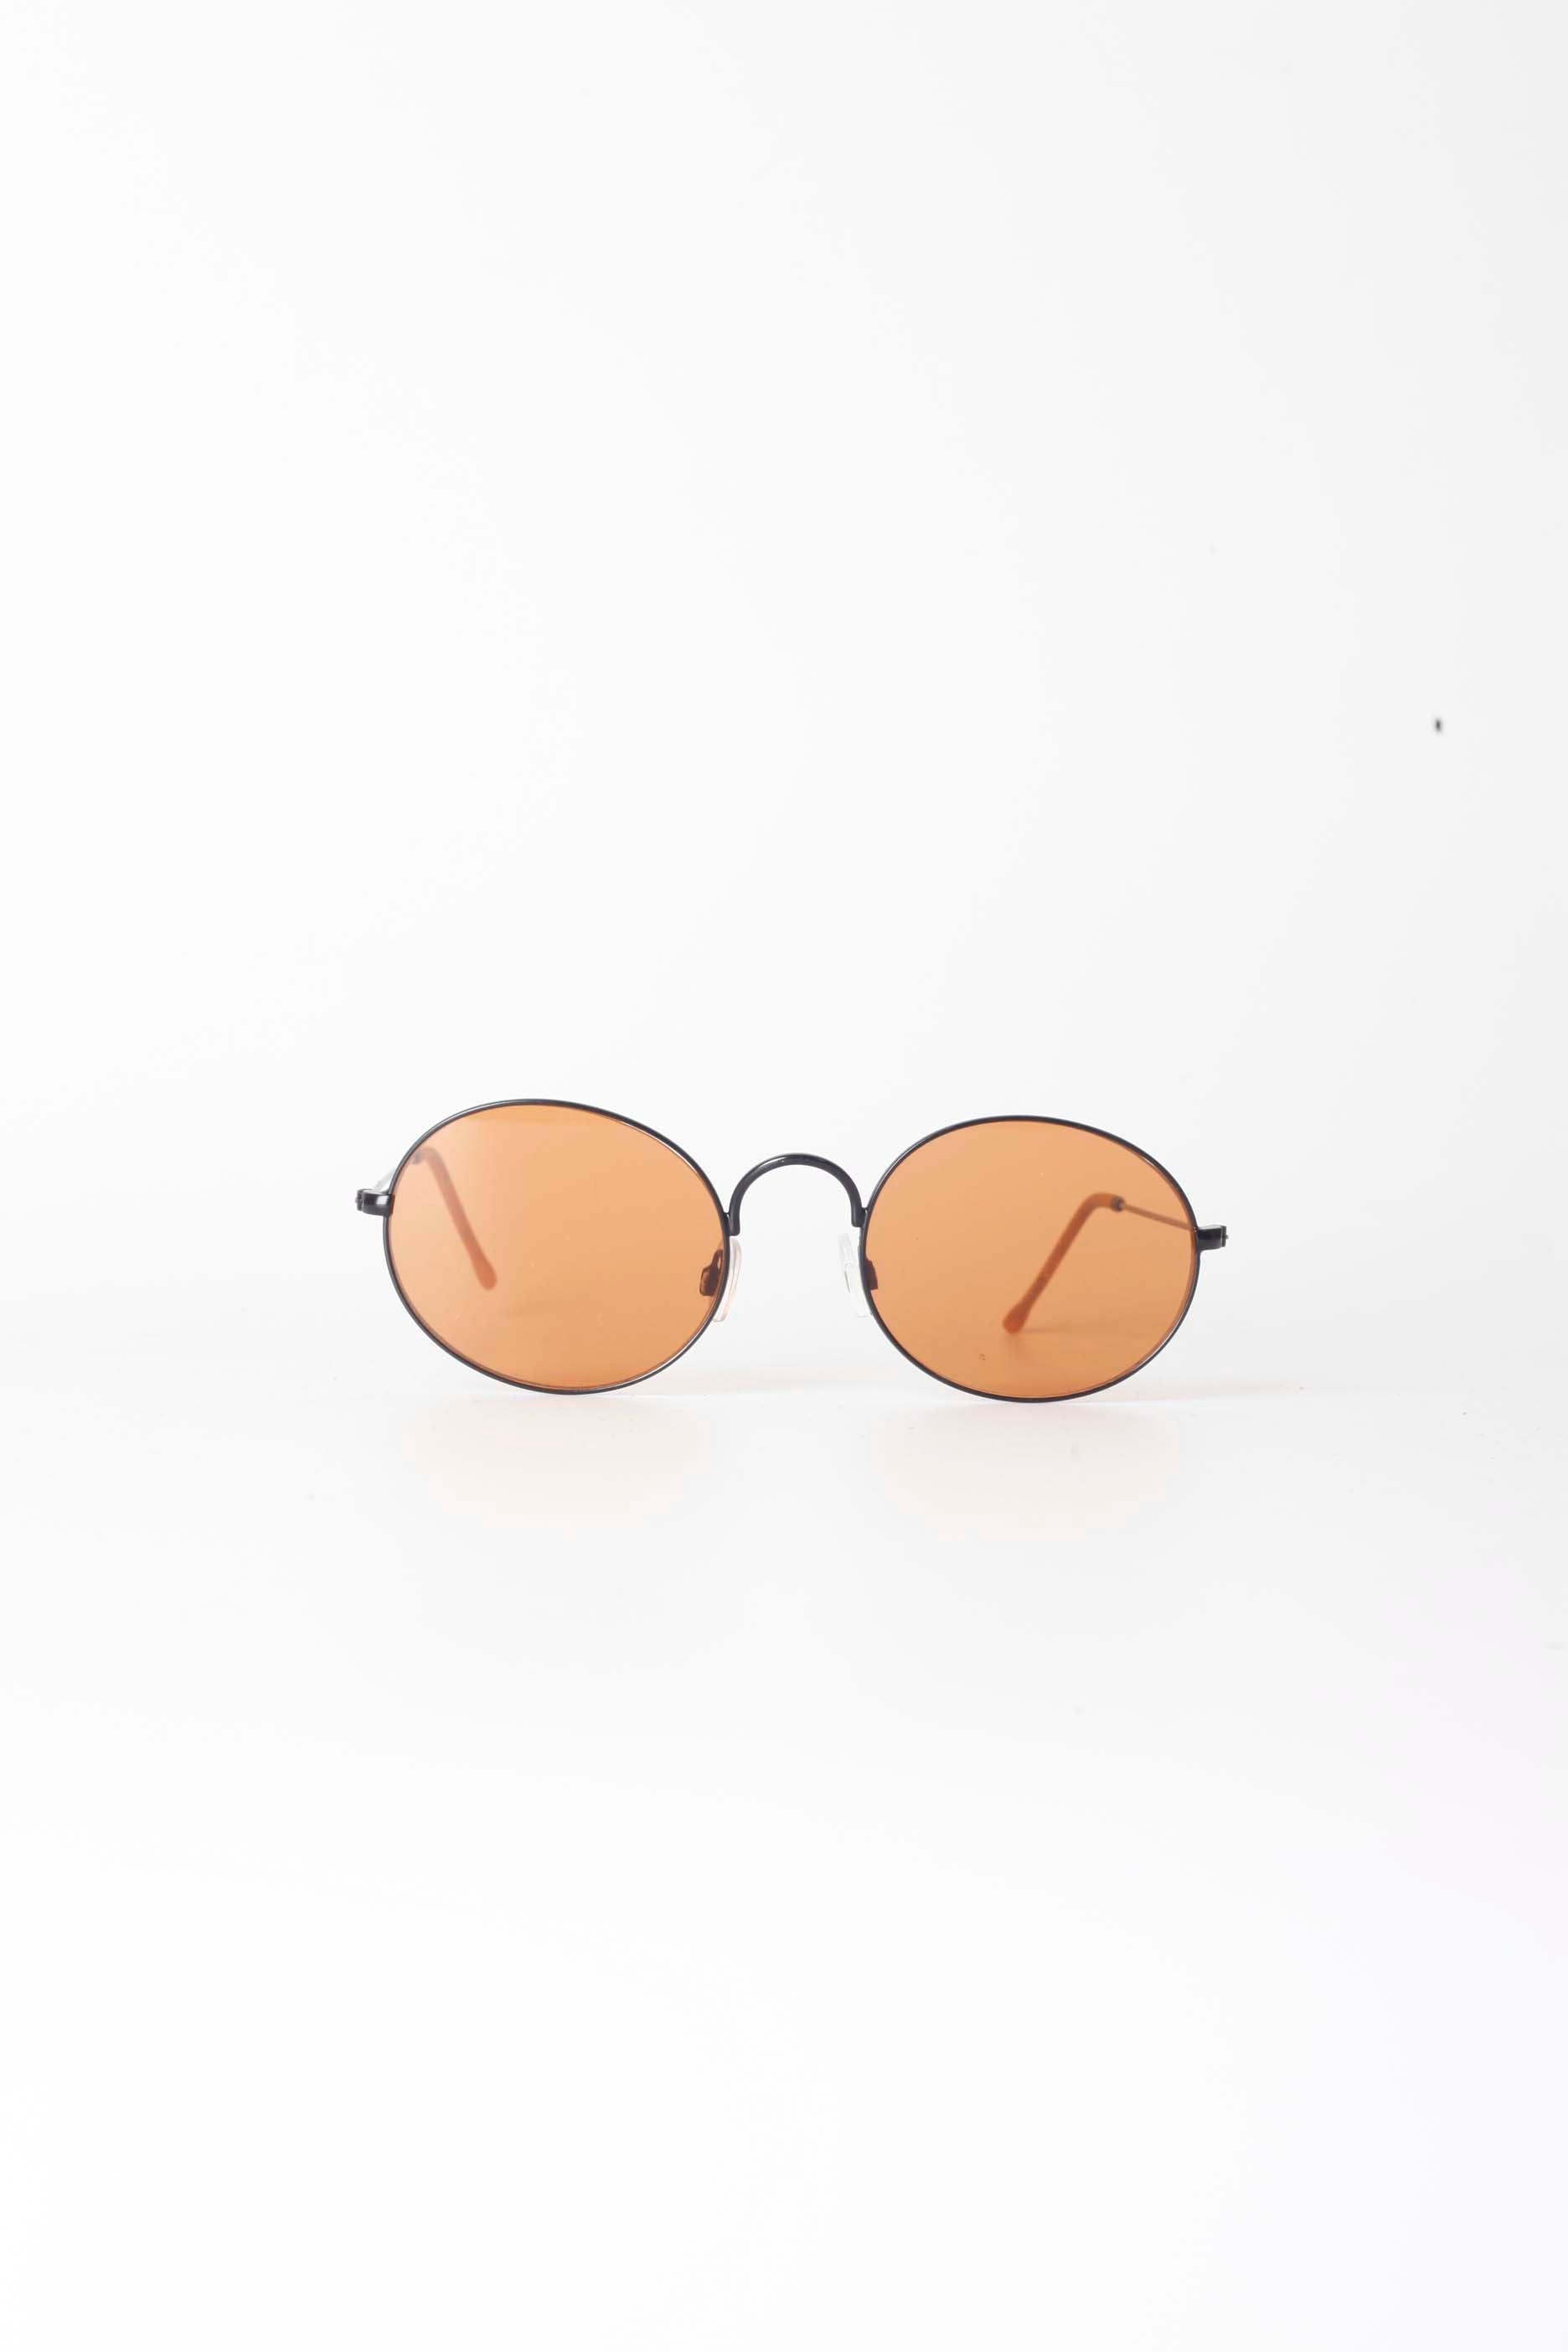 Oval Orange Tinted Sunglasses